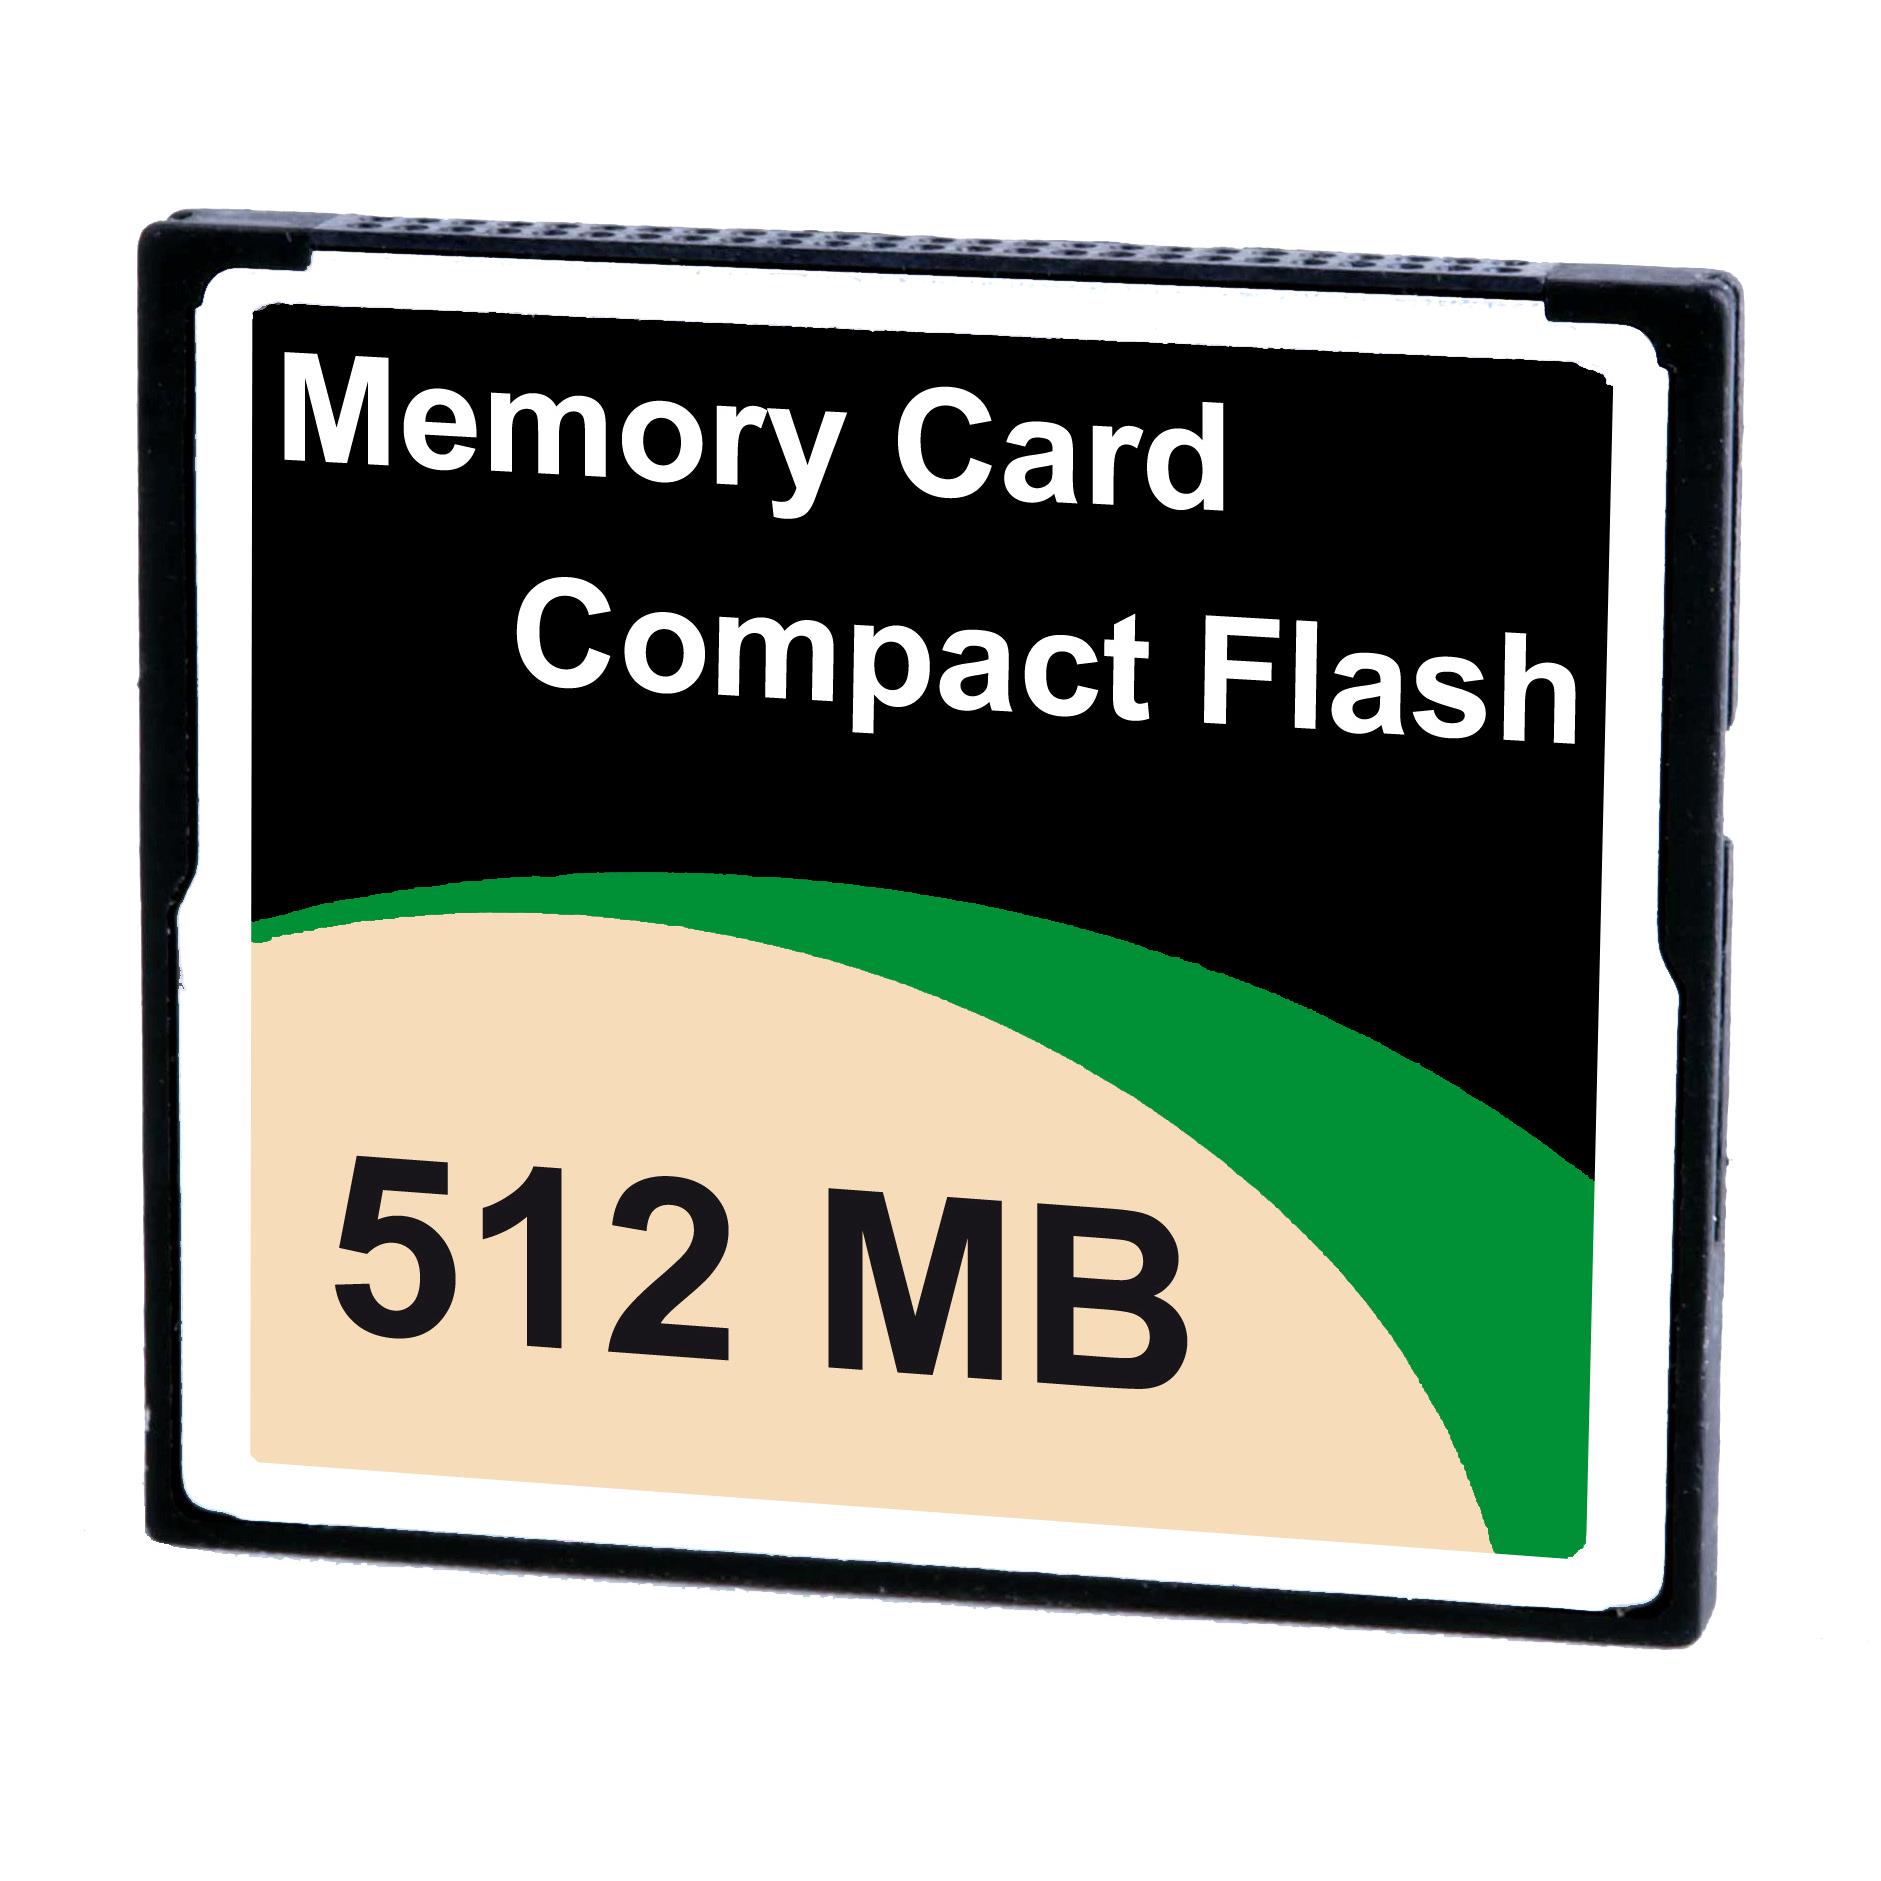 【MPCYN00CFE00N】COMPACT FLASH 512 MB